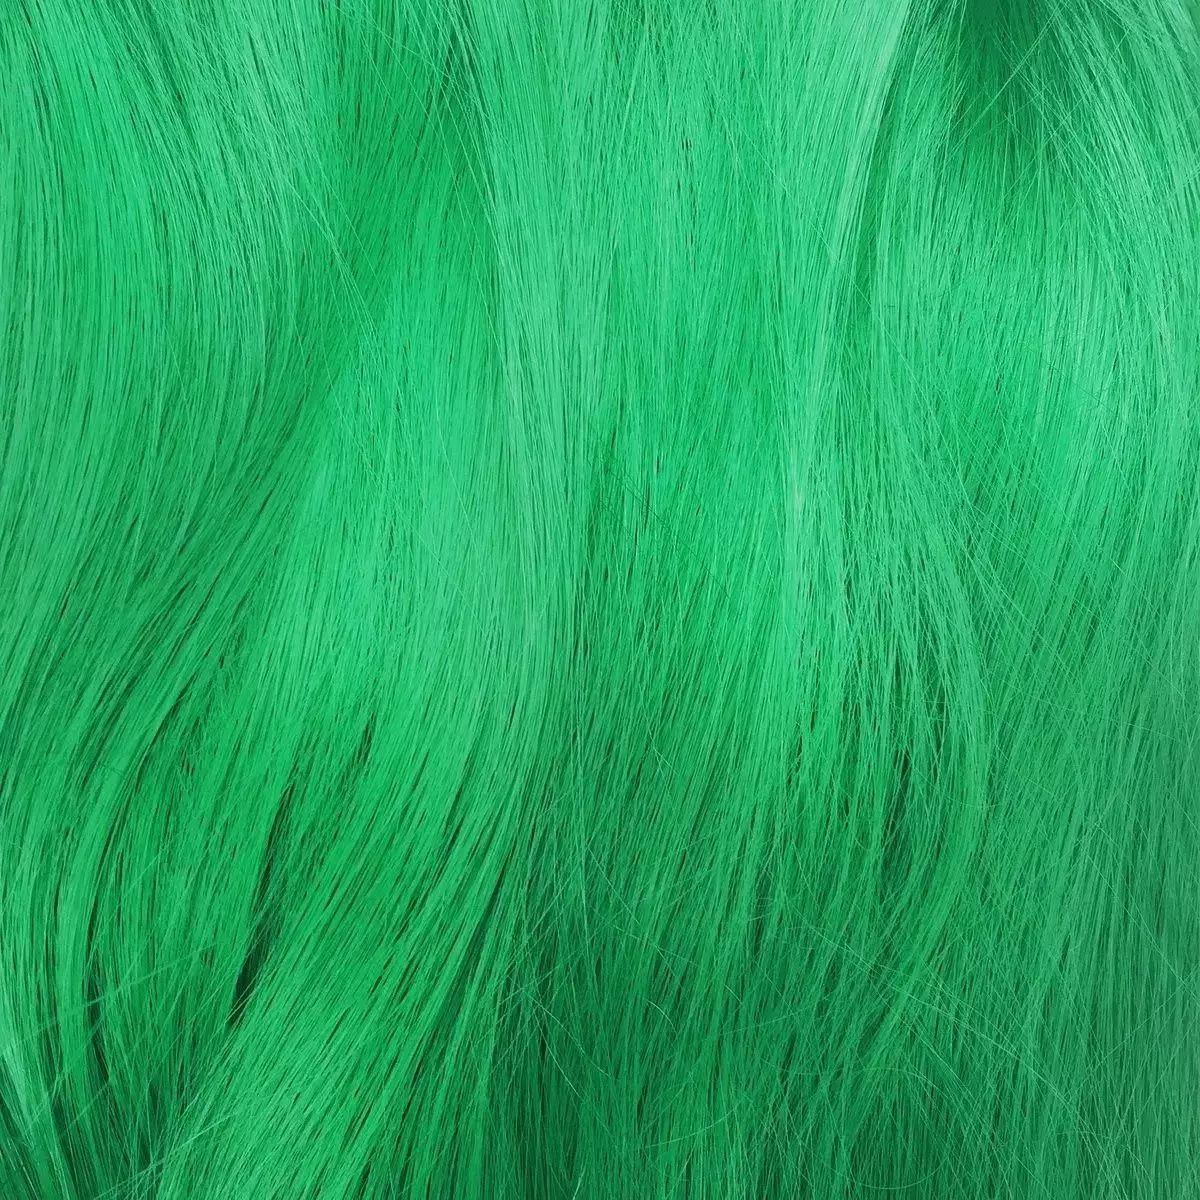 绿色头发色系大全图片